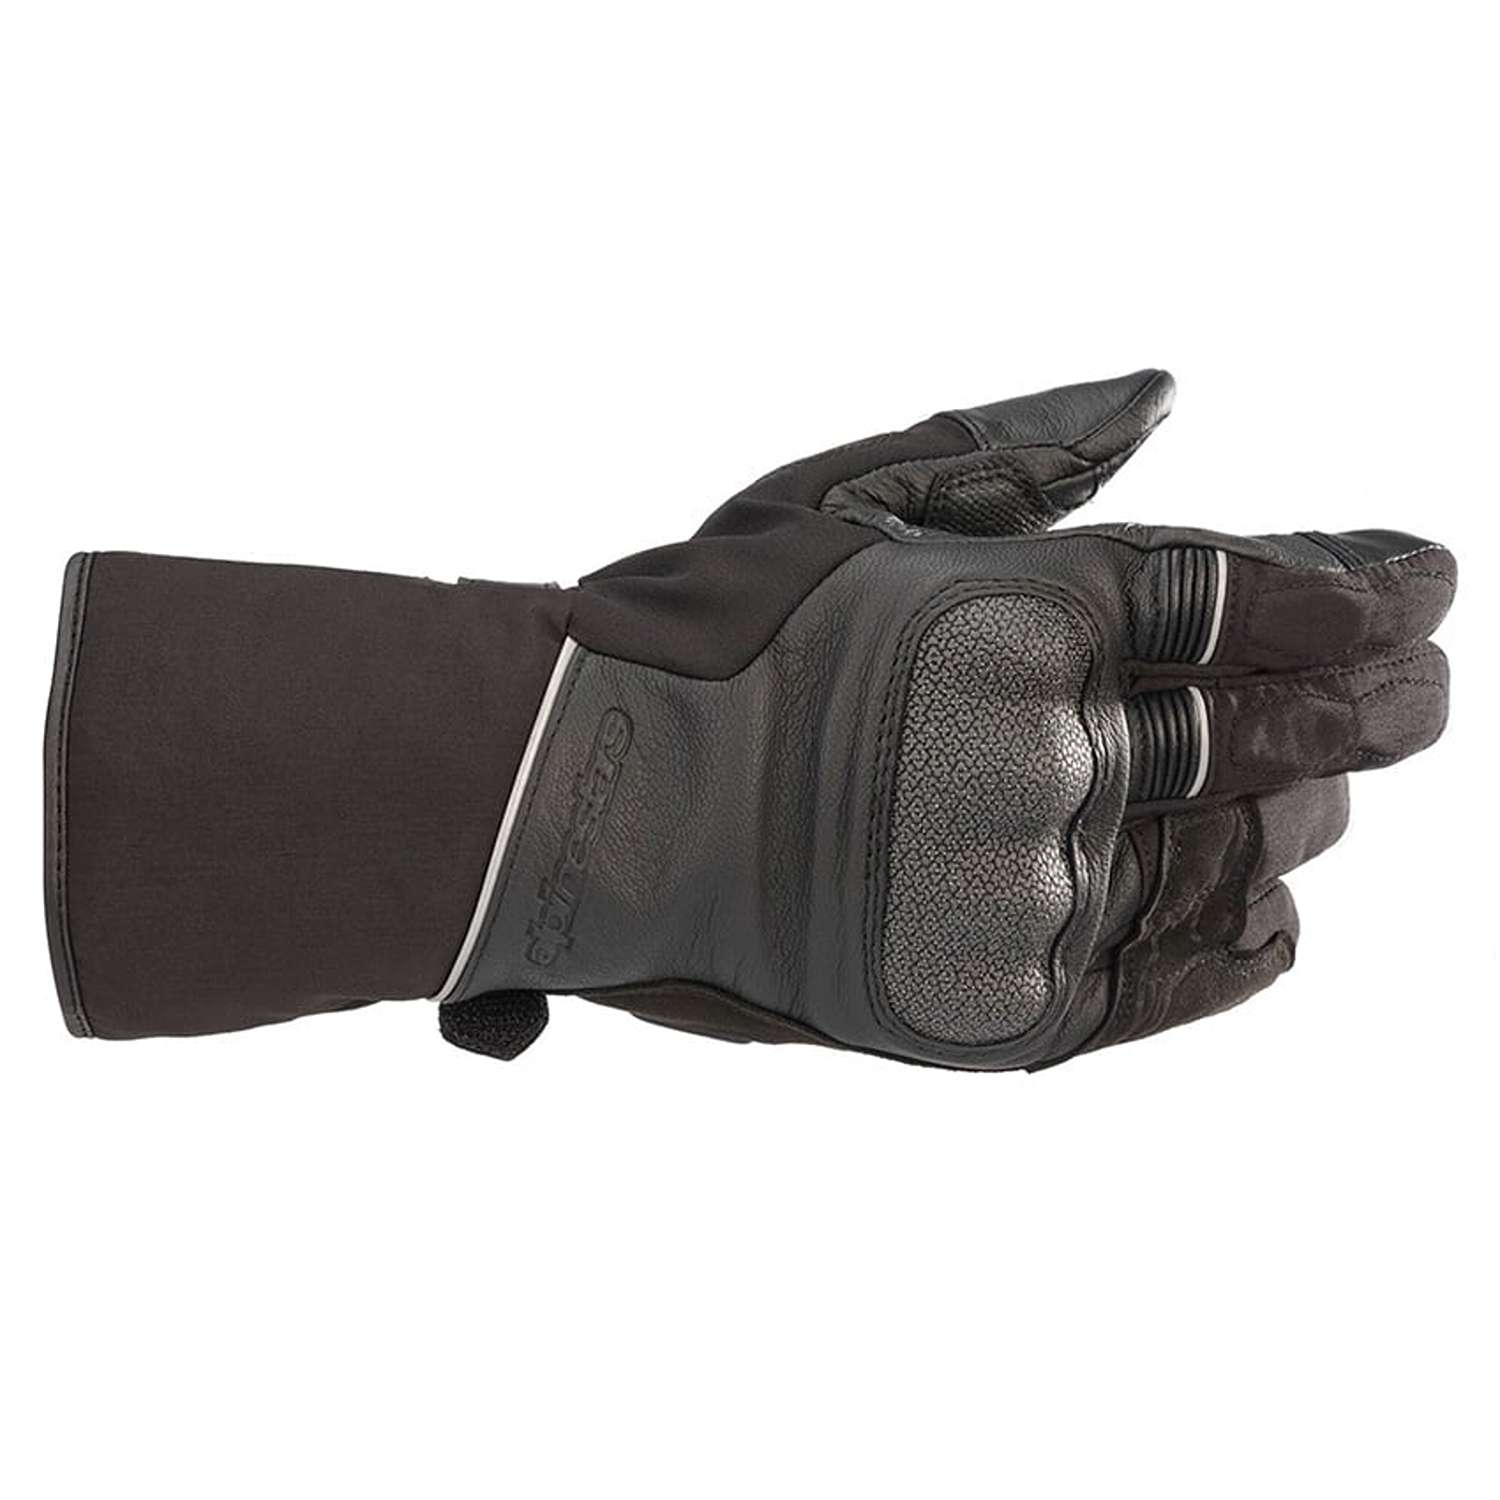 Image of Alpinestars Wr-2 V2 Gore-Tex Gloves With Gore Grip Technology Black Größe M